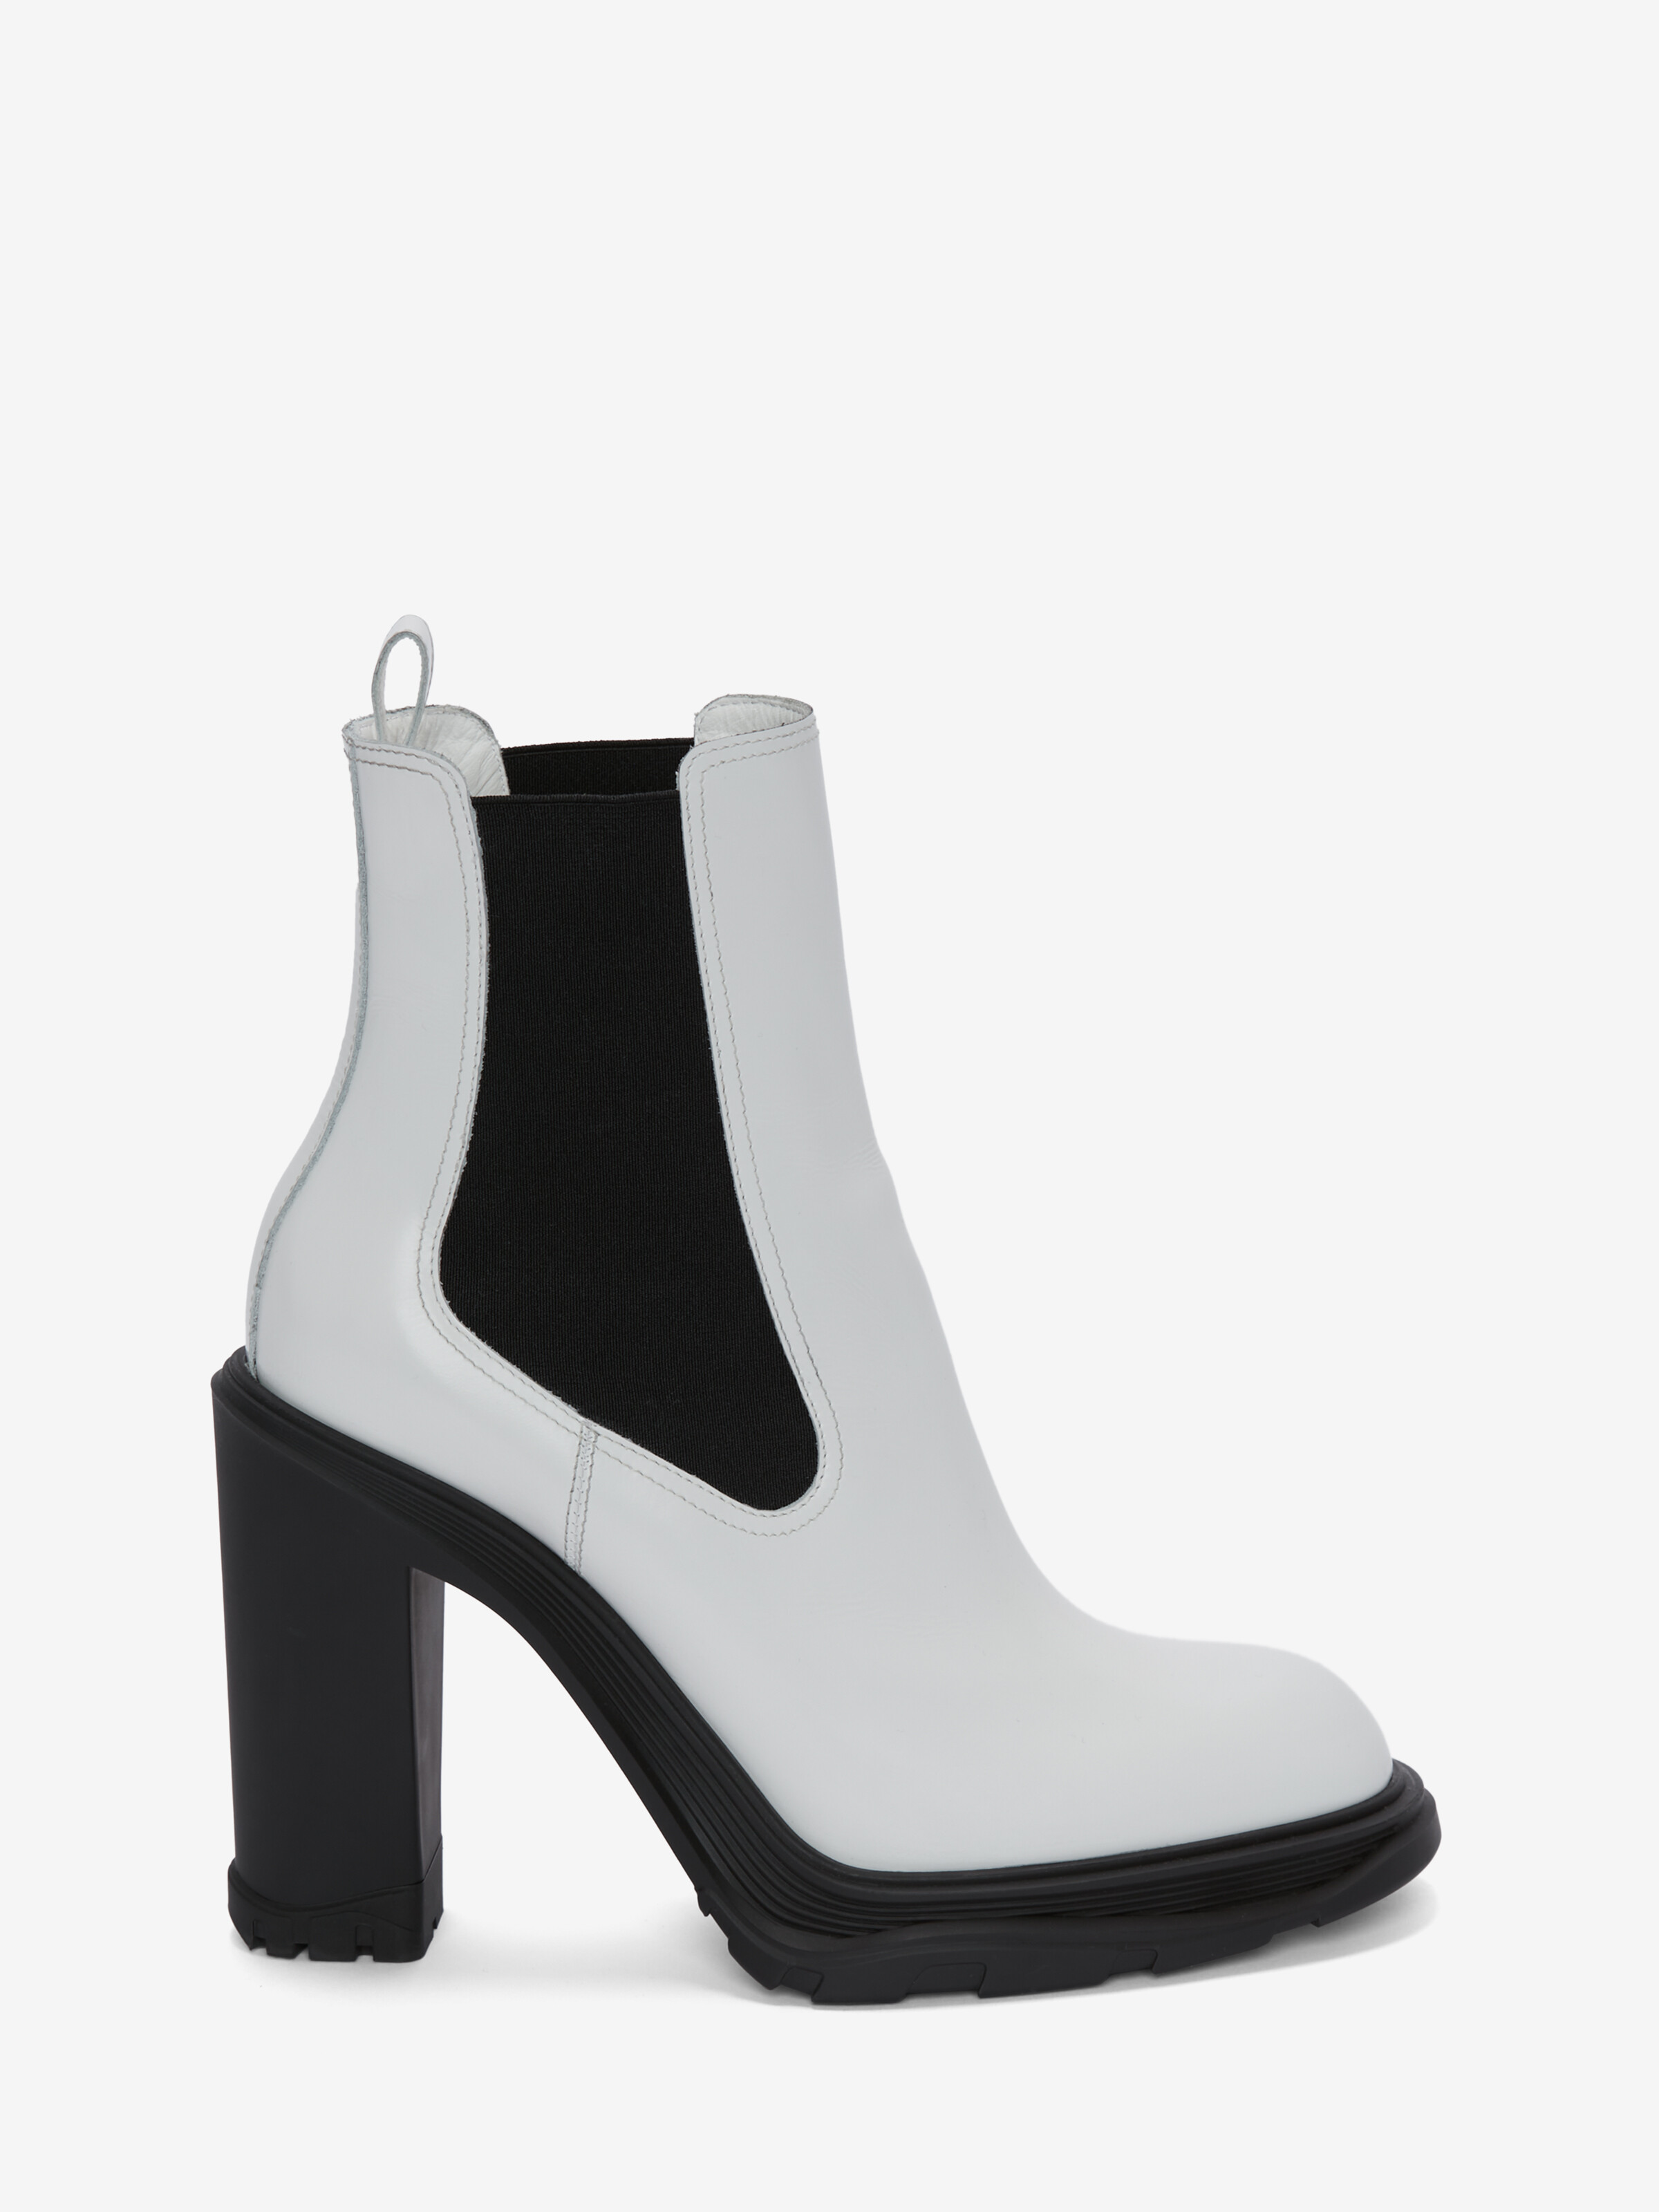 人気の贈り物が Black McQueen Alexander tread boots Chelsea heeled シューズ・サンダルその他 サイズを選択してください:40IT - www